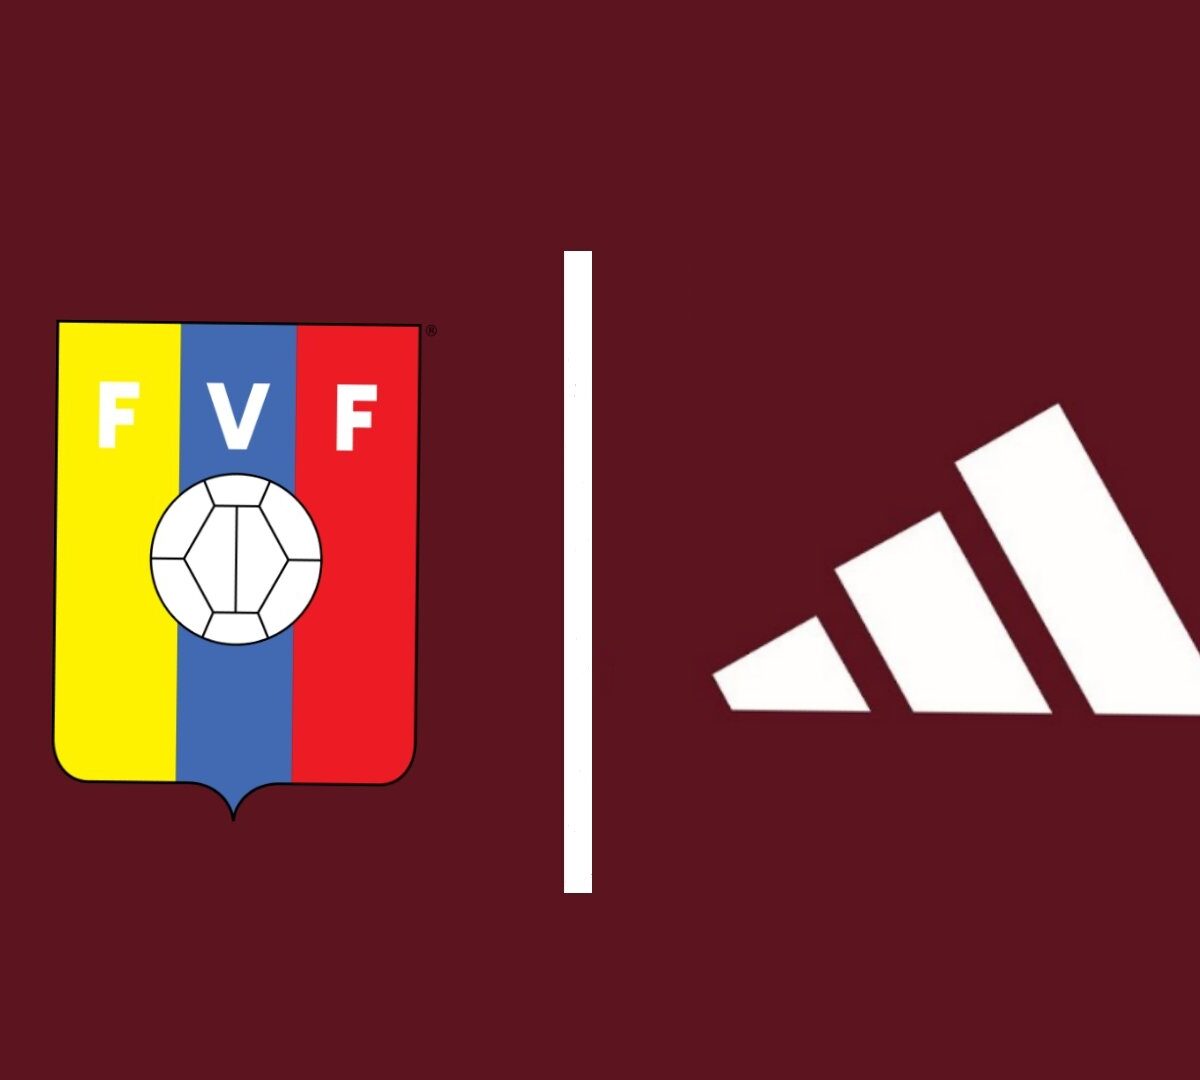 FVF y Adidas I